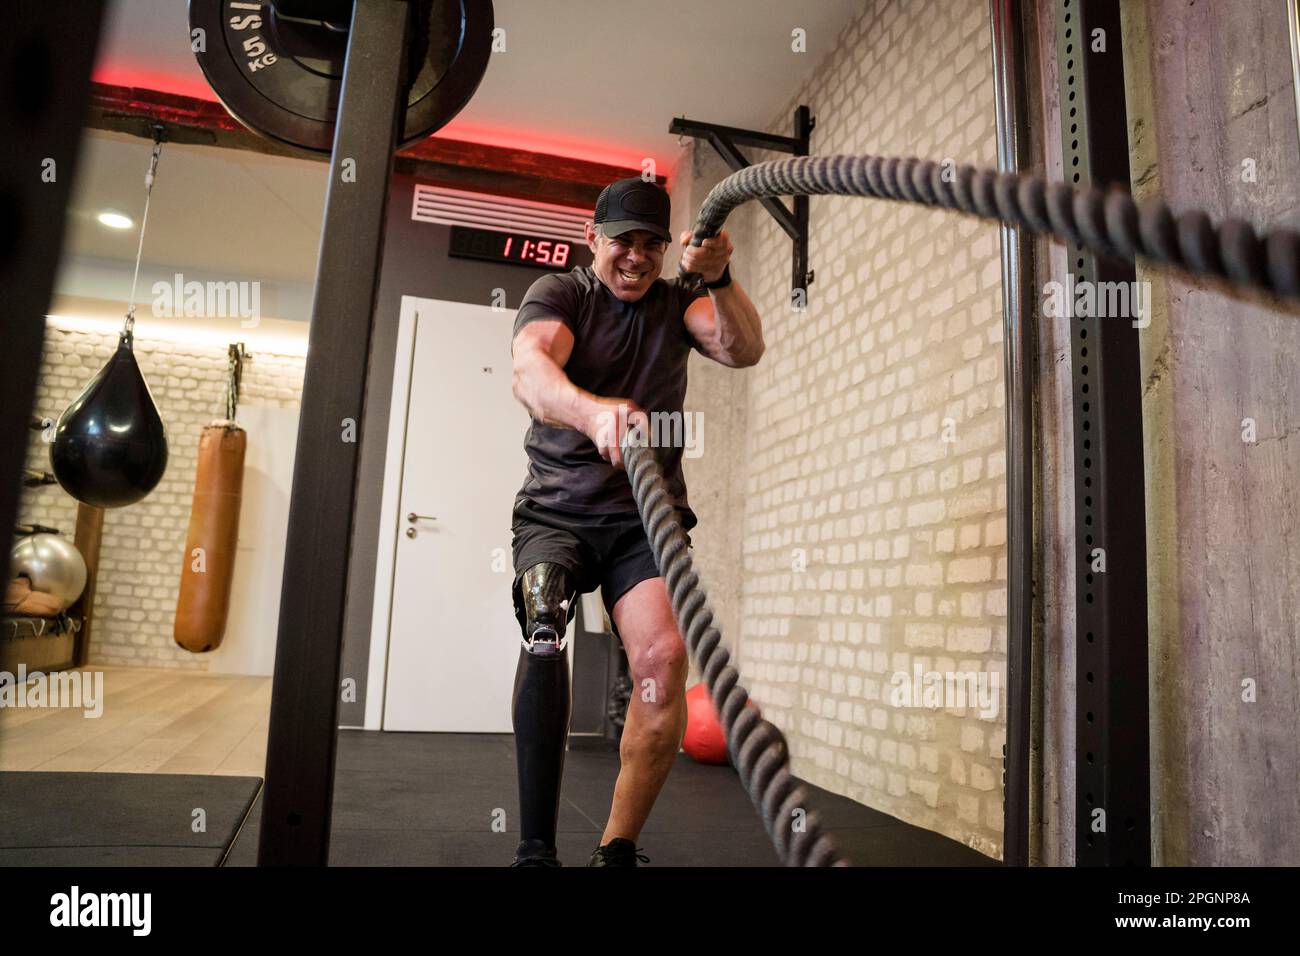 Homme mature avec une jambe prothétique faisant des cordes de combat en salle de gym Banque D'Images